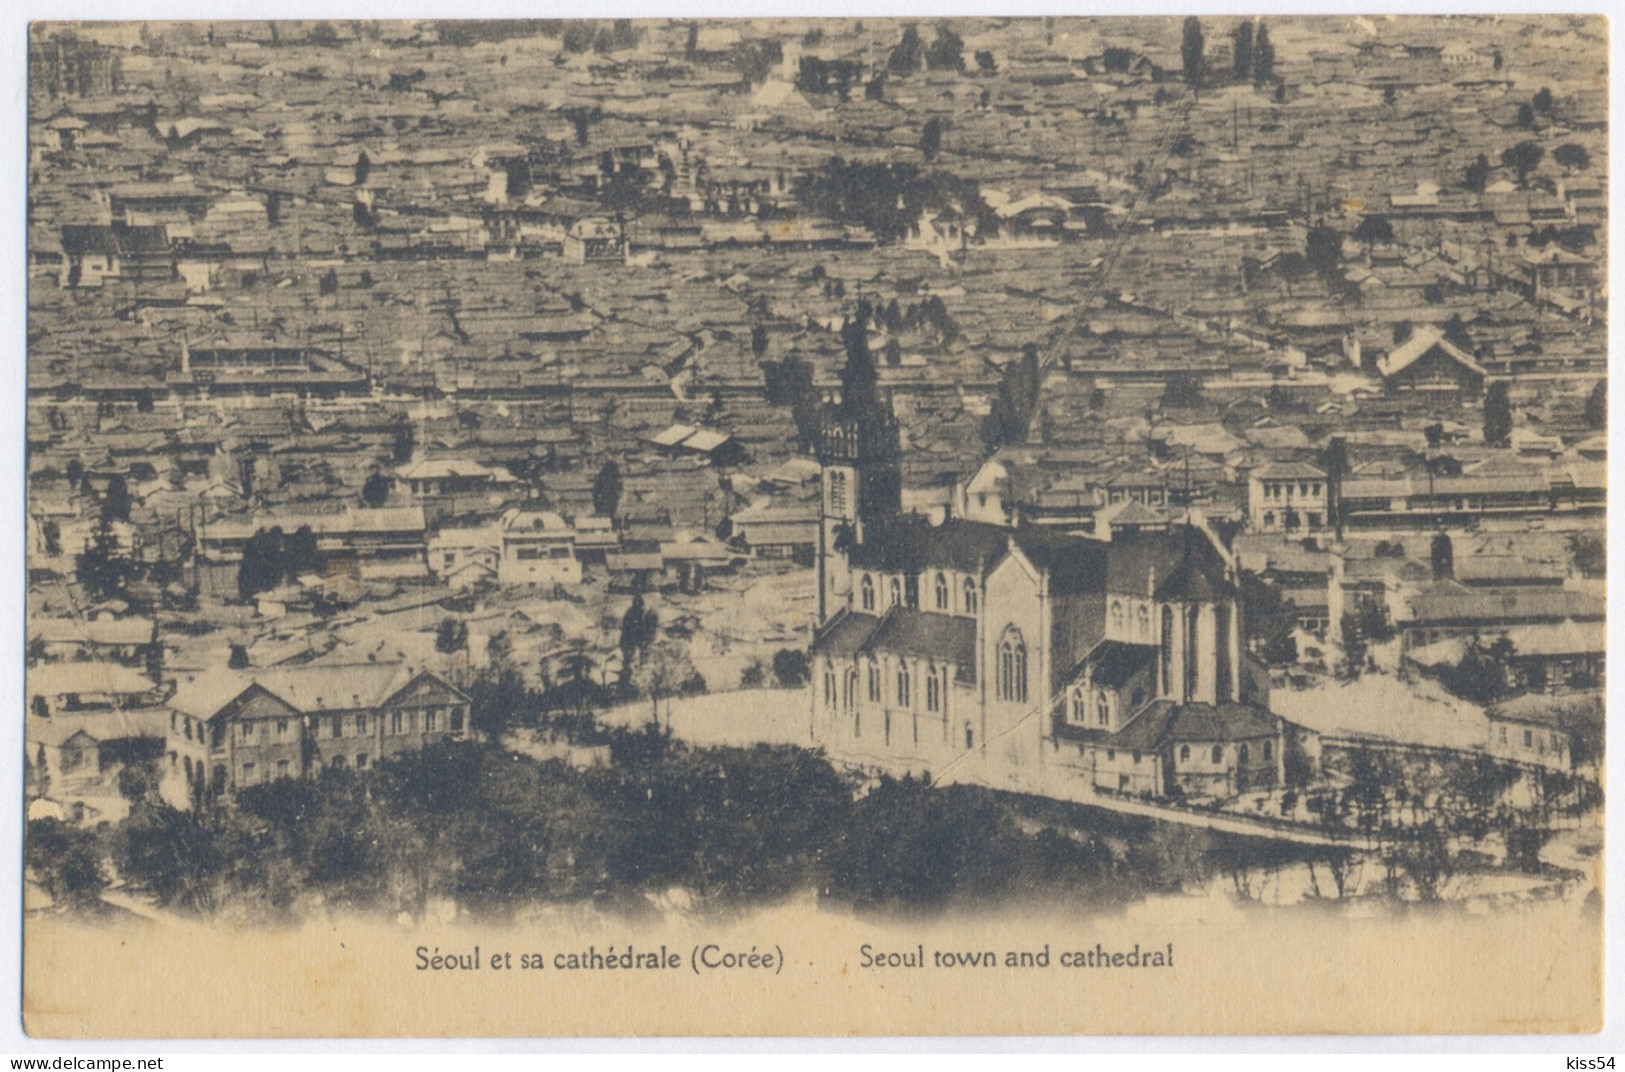 KOR 3 - 10337 SEOUL, Korea, Cathedral - Old Postcard - Unused - Corée Du Sud